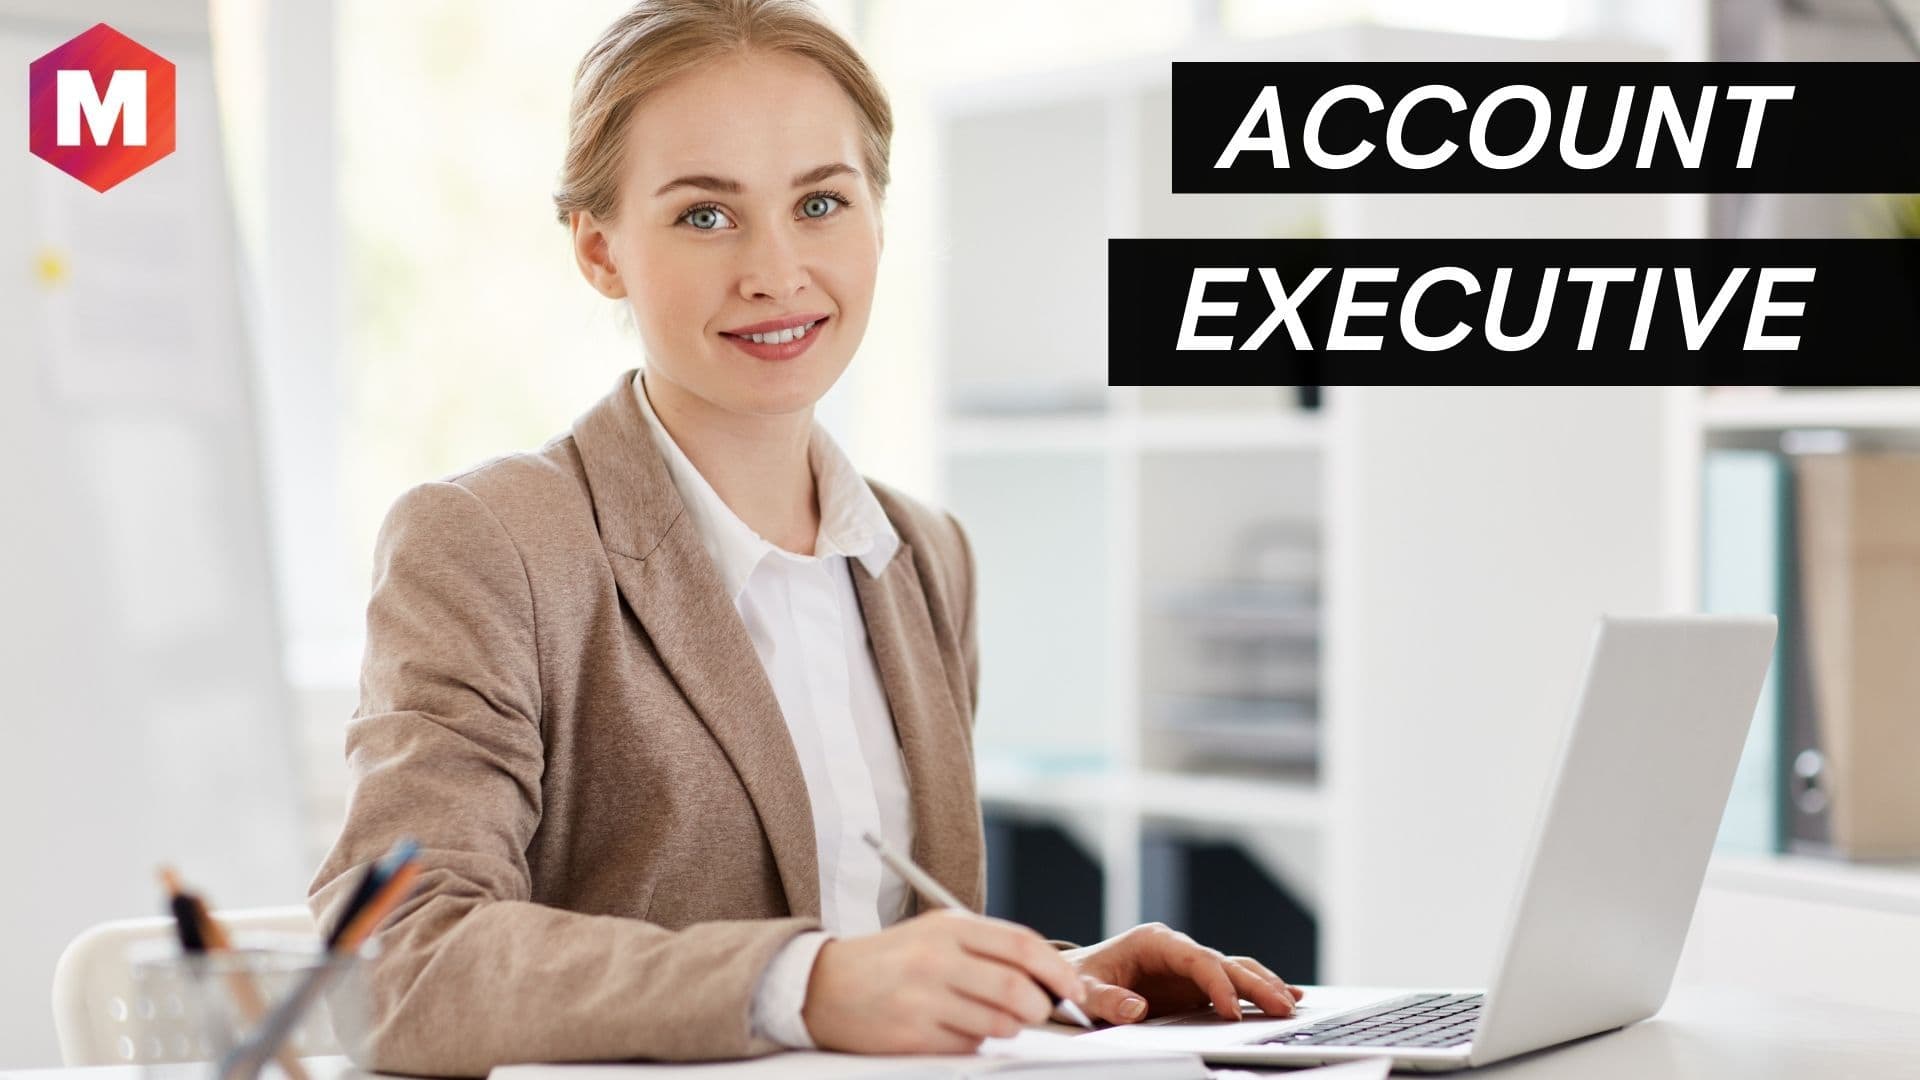 Account executive job description